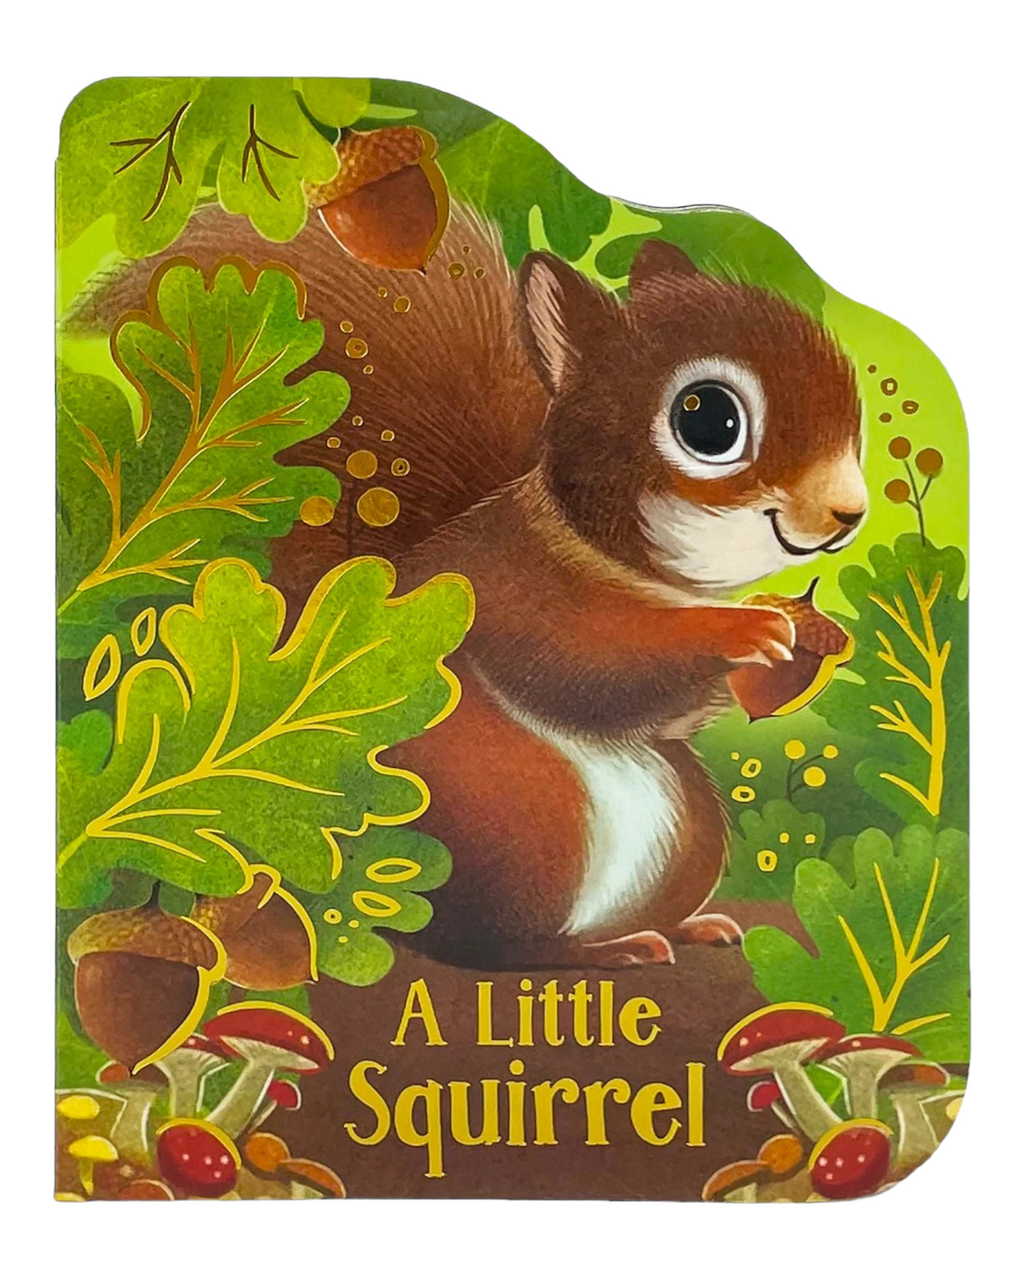 A Little Squirrel